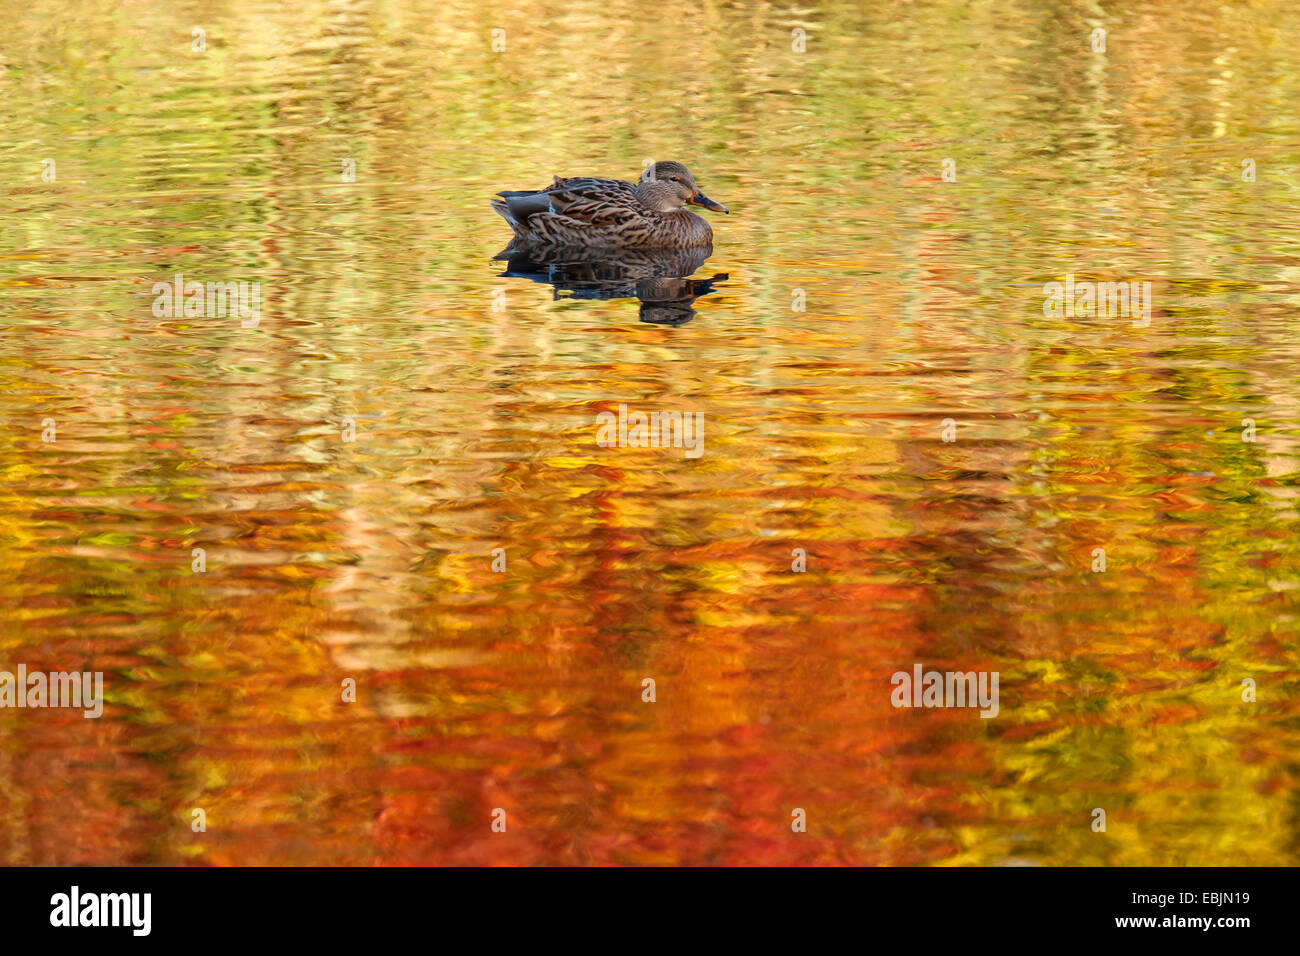 Le Canard colvert (Anas platyrhynchos), natation sur un étang, automne arbres se reflétant dans l'eau, de l'Allemagne, Rhénanie du Nord-Westphalie Banque D'Images